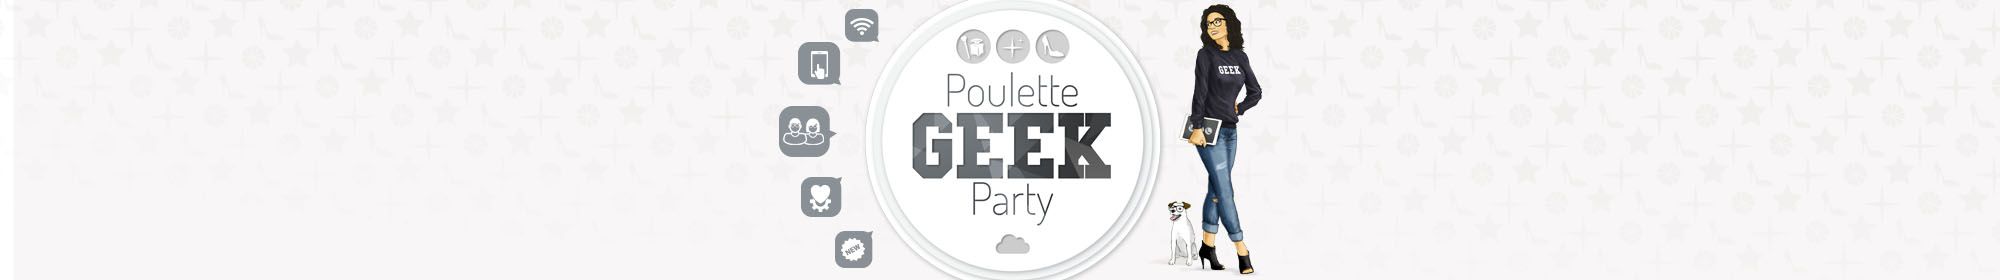 Poulette Geek Party